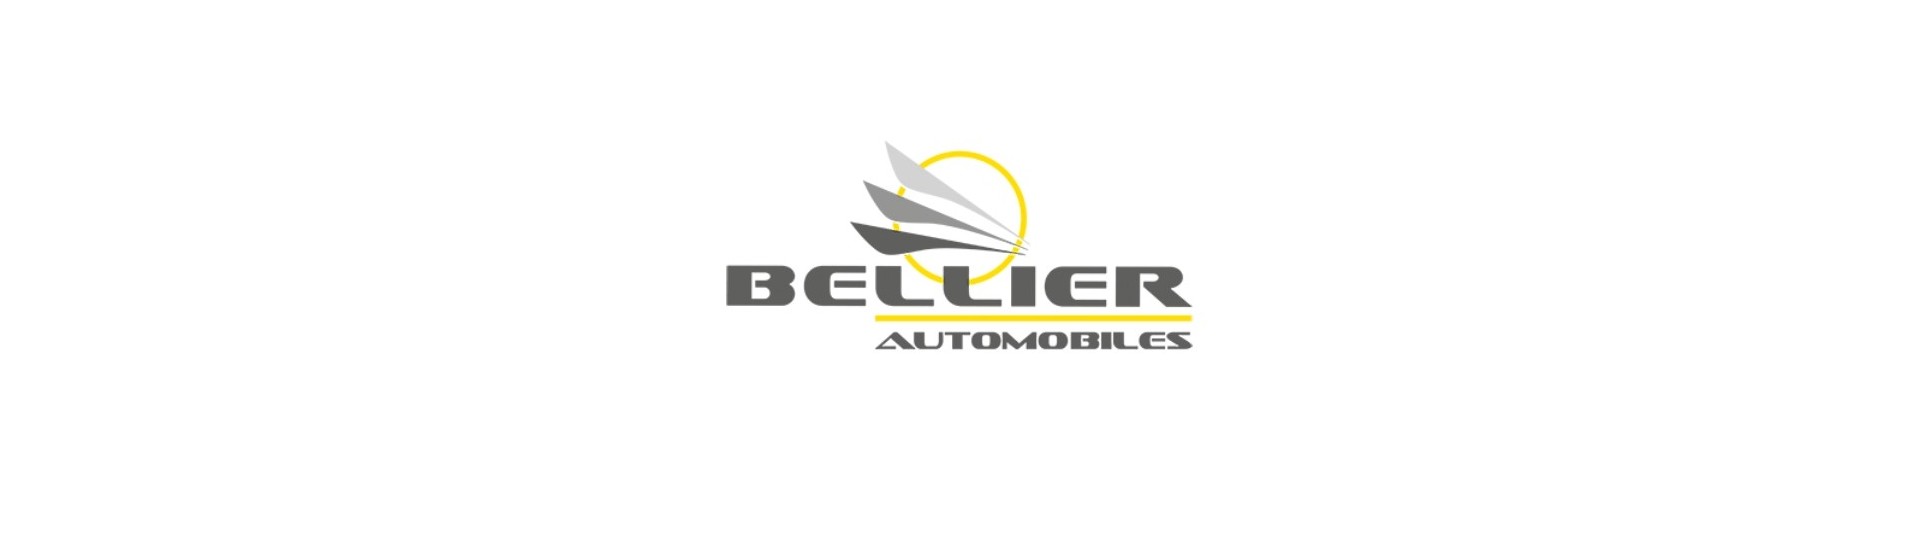 Paras hinta autolle ilman lupaa Bellier